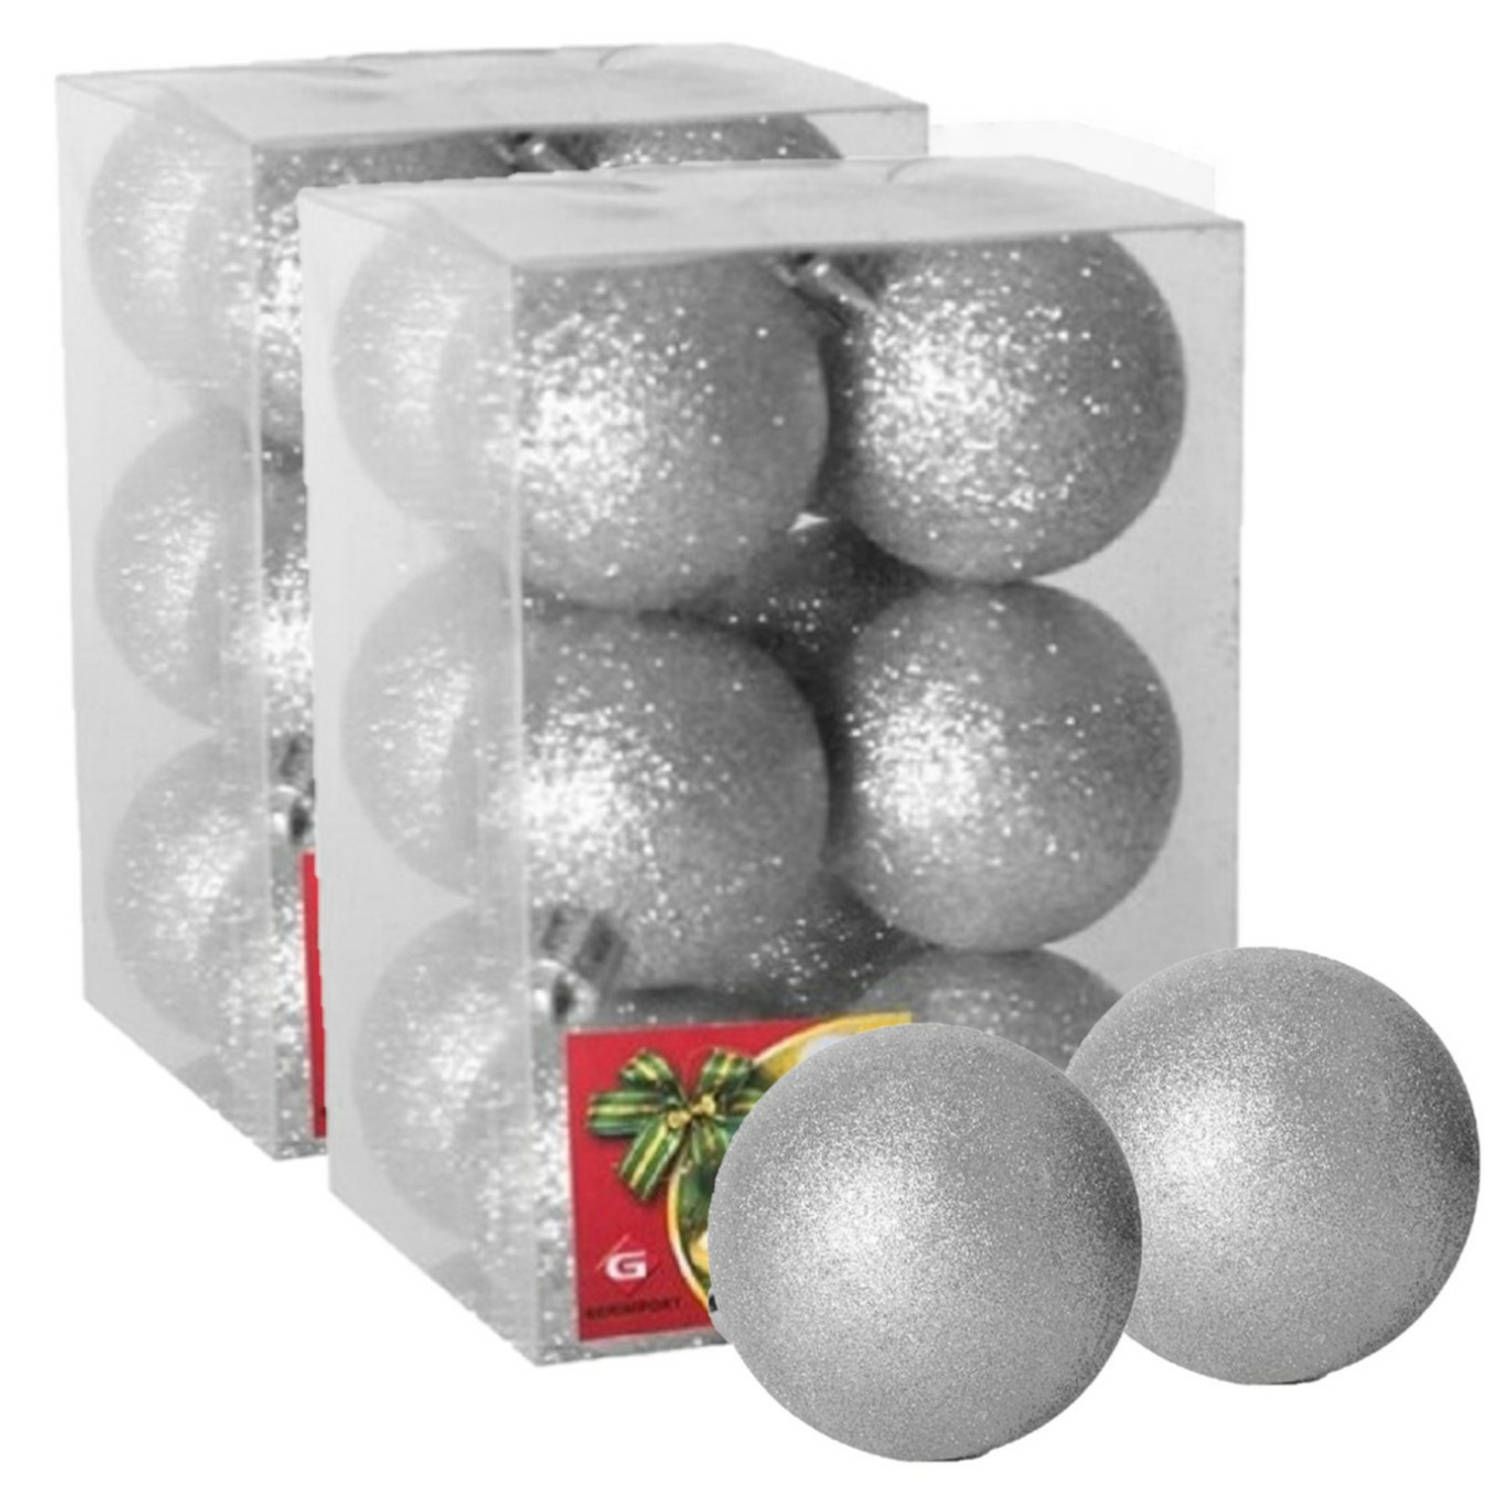 24x stuks kerstballen zilver glitters kunststof 6 cm Kerstbal